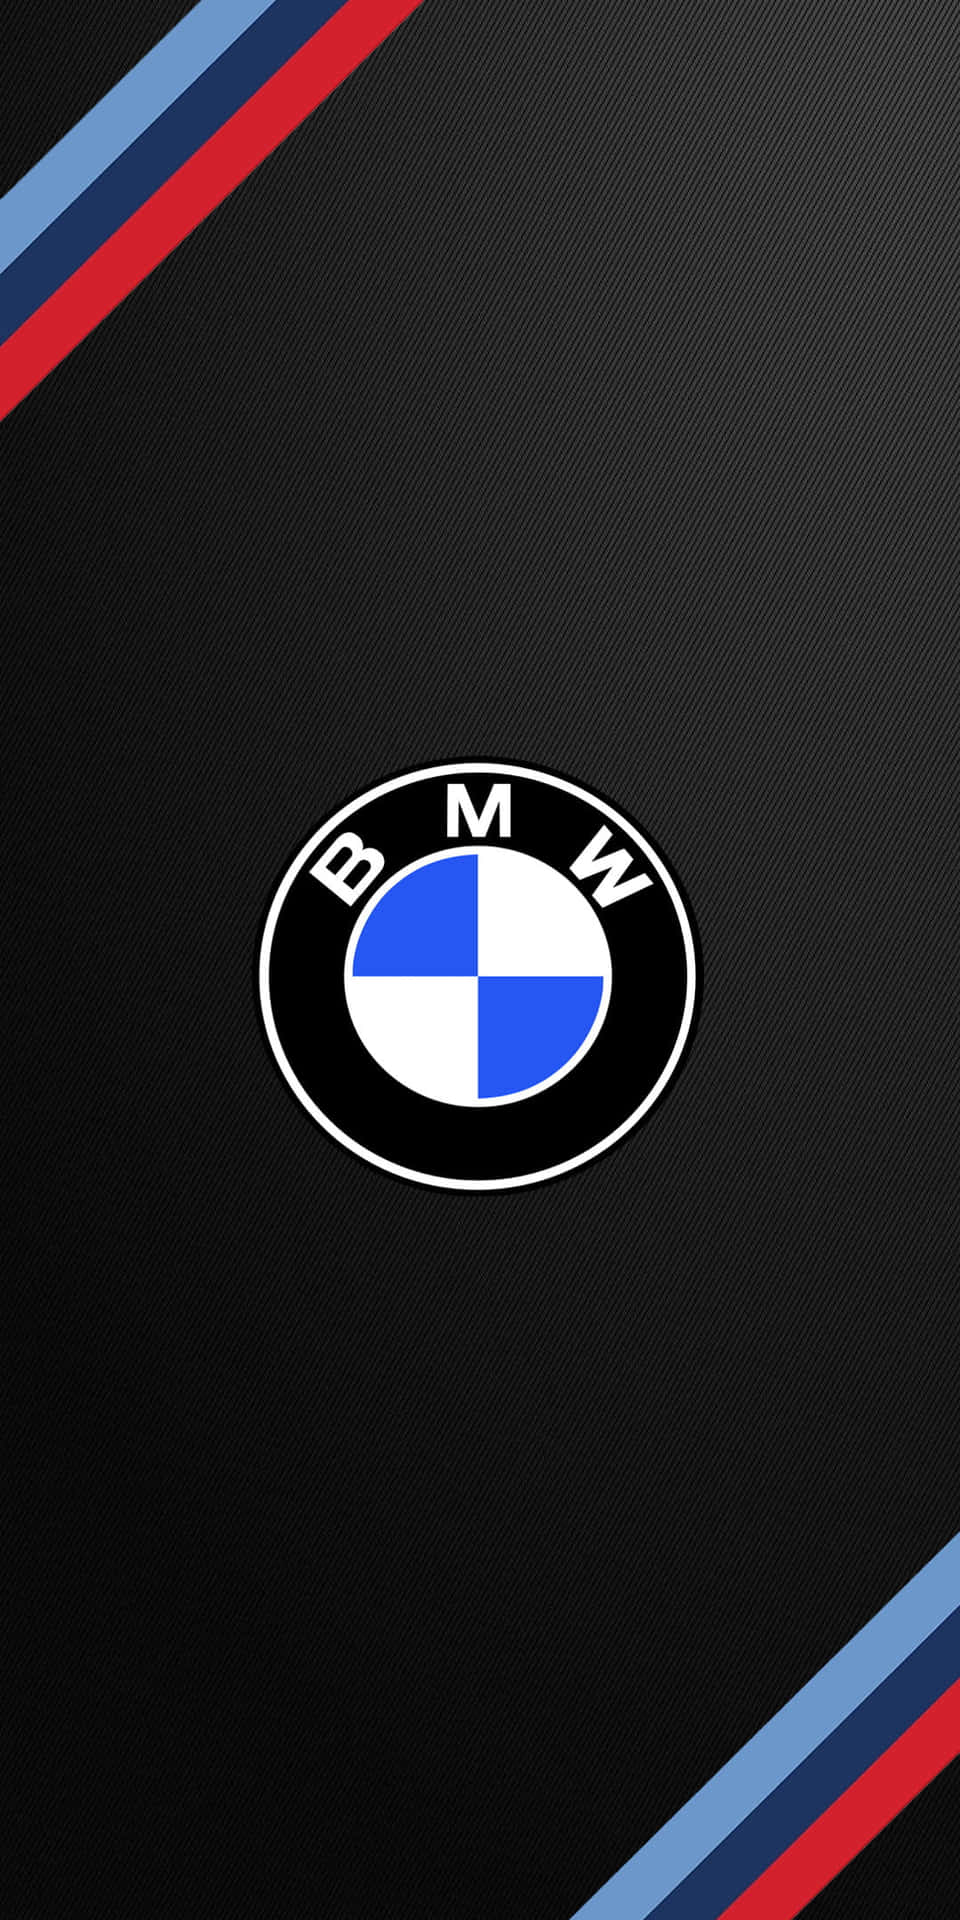 Logotipode Bmw En Color Azul Brillante. Fondo de pantalla